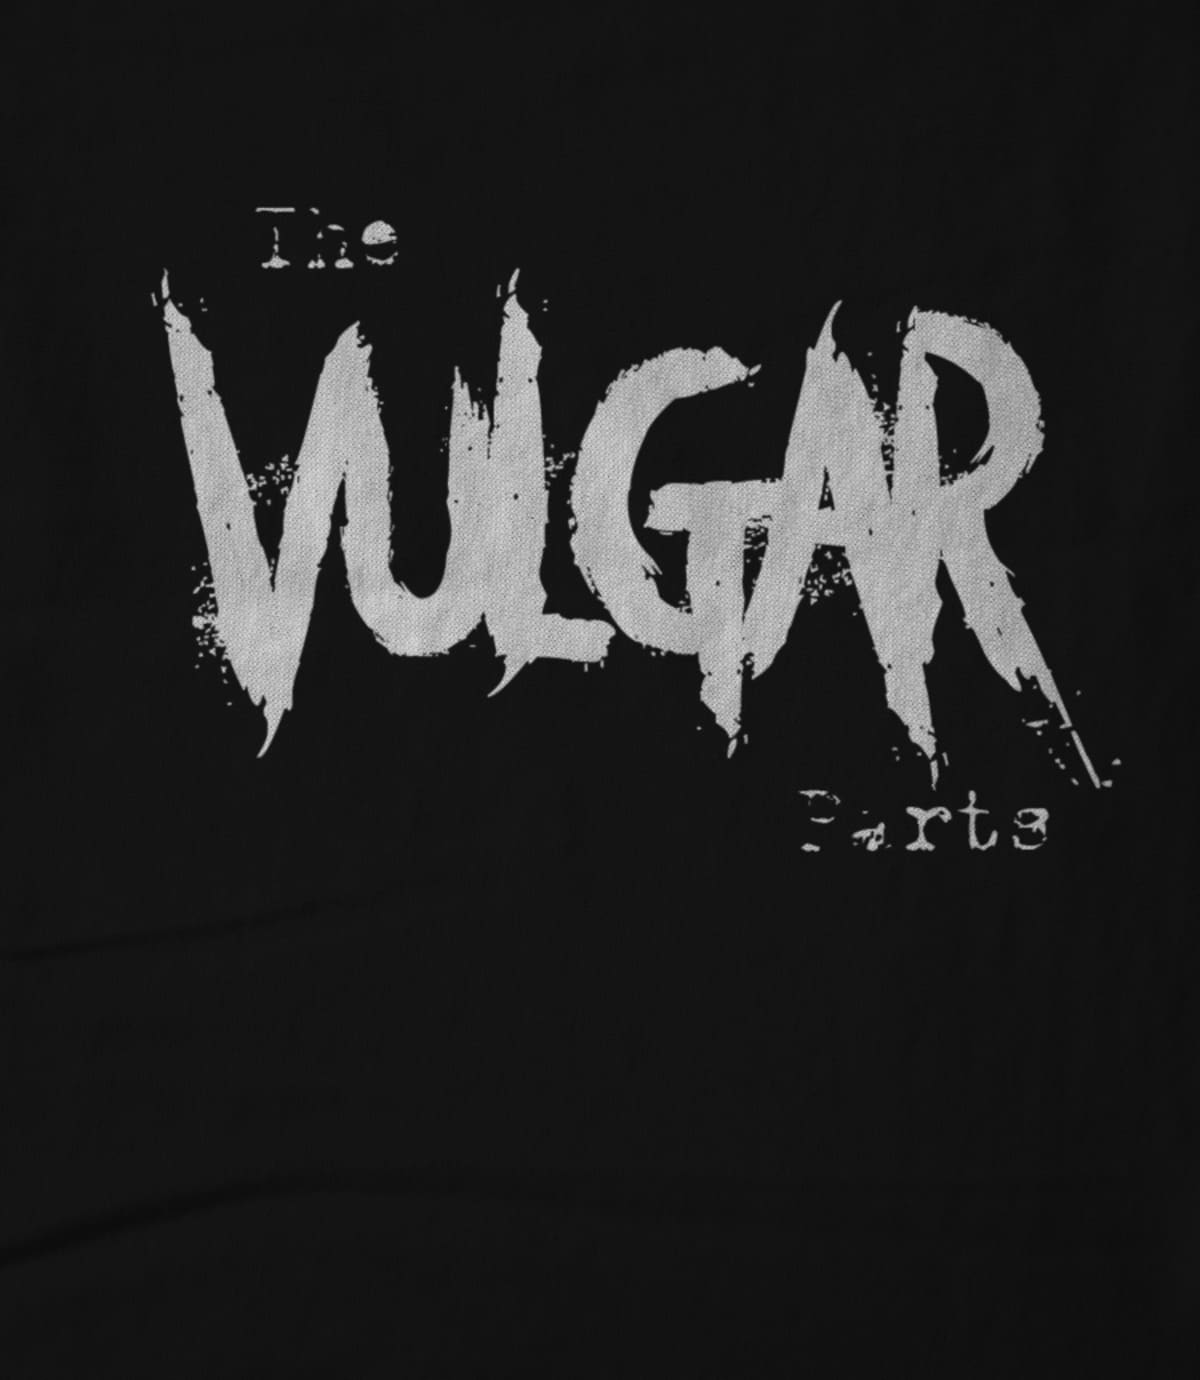 The vulgar parts v3 the vulgar parts v3 1619893426